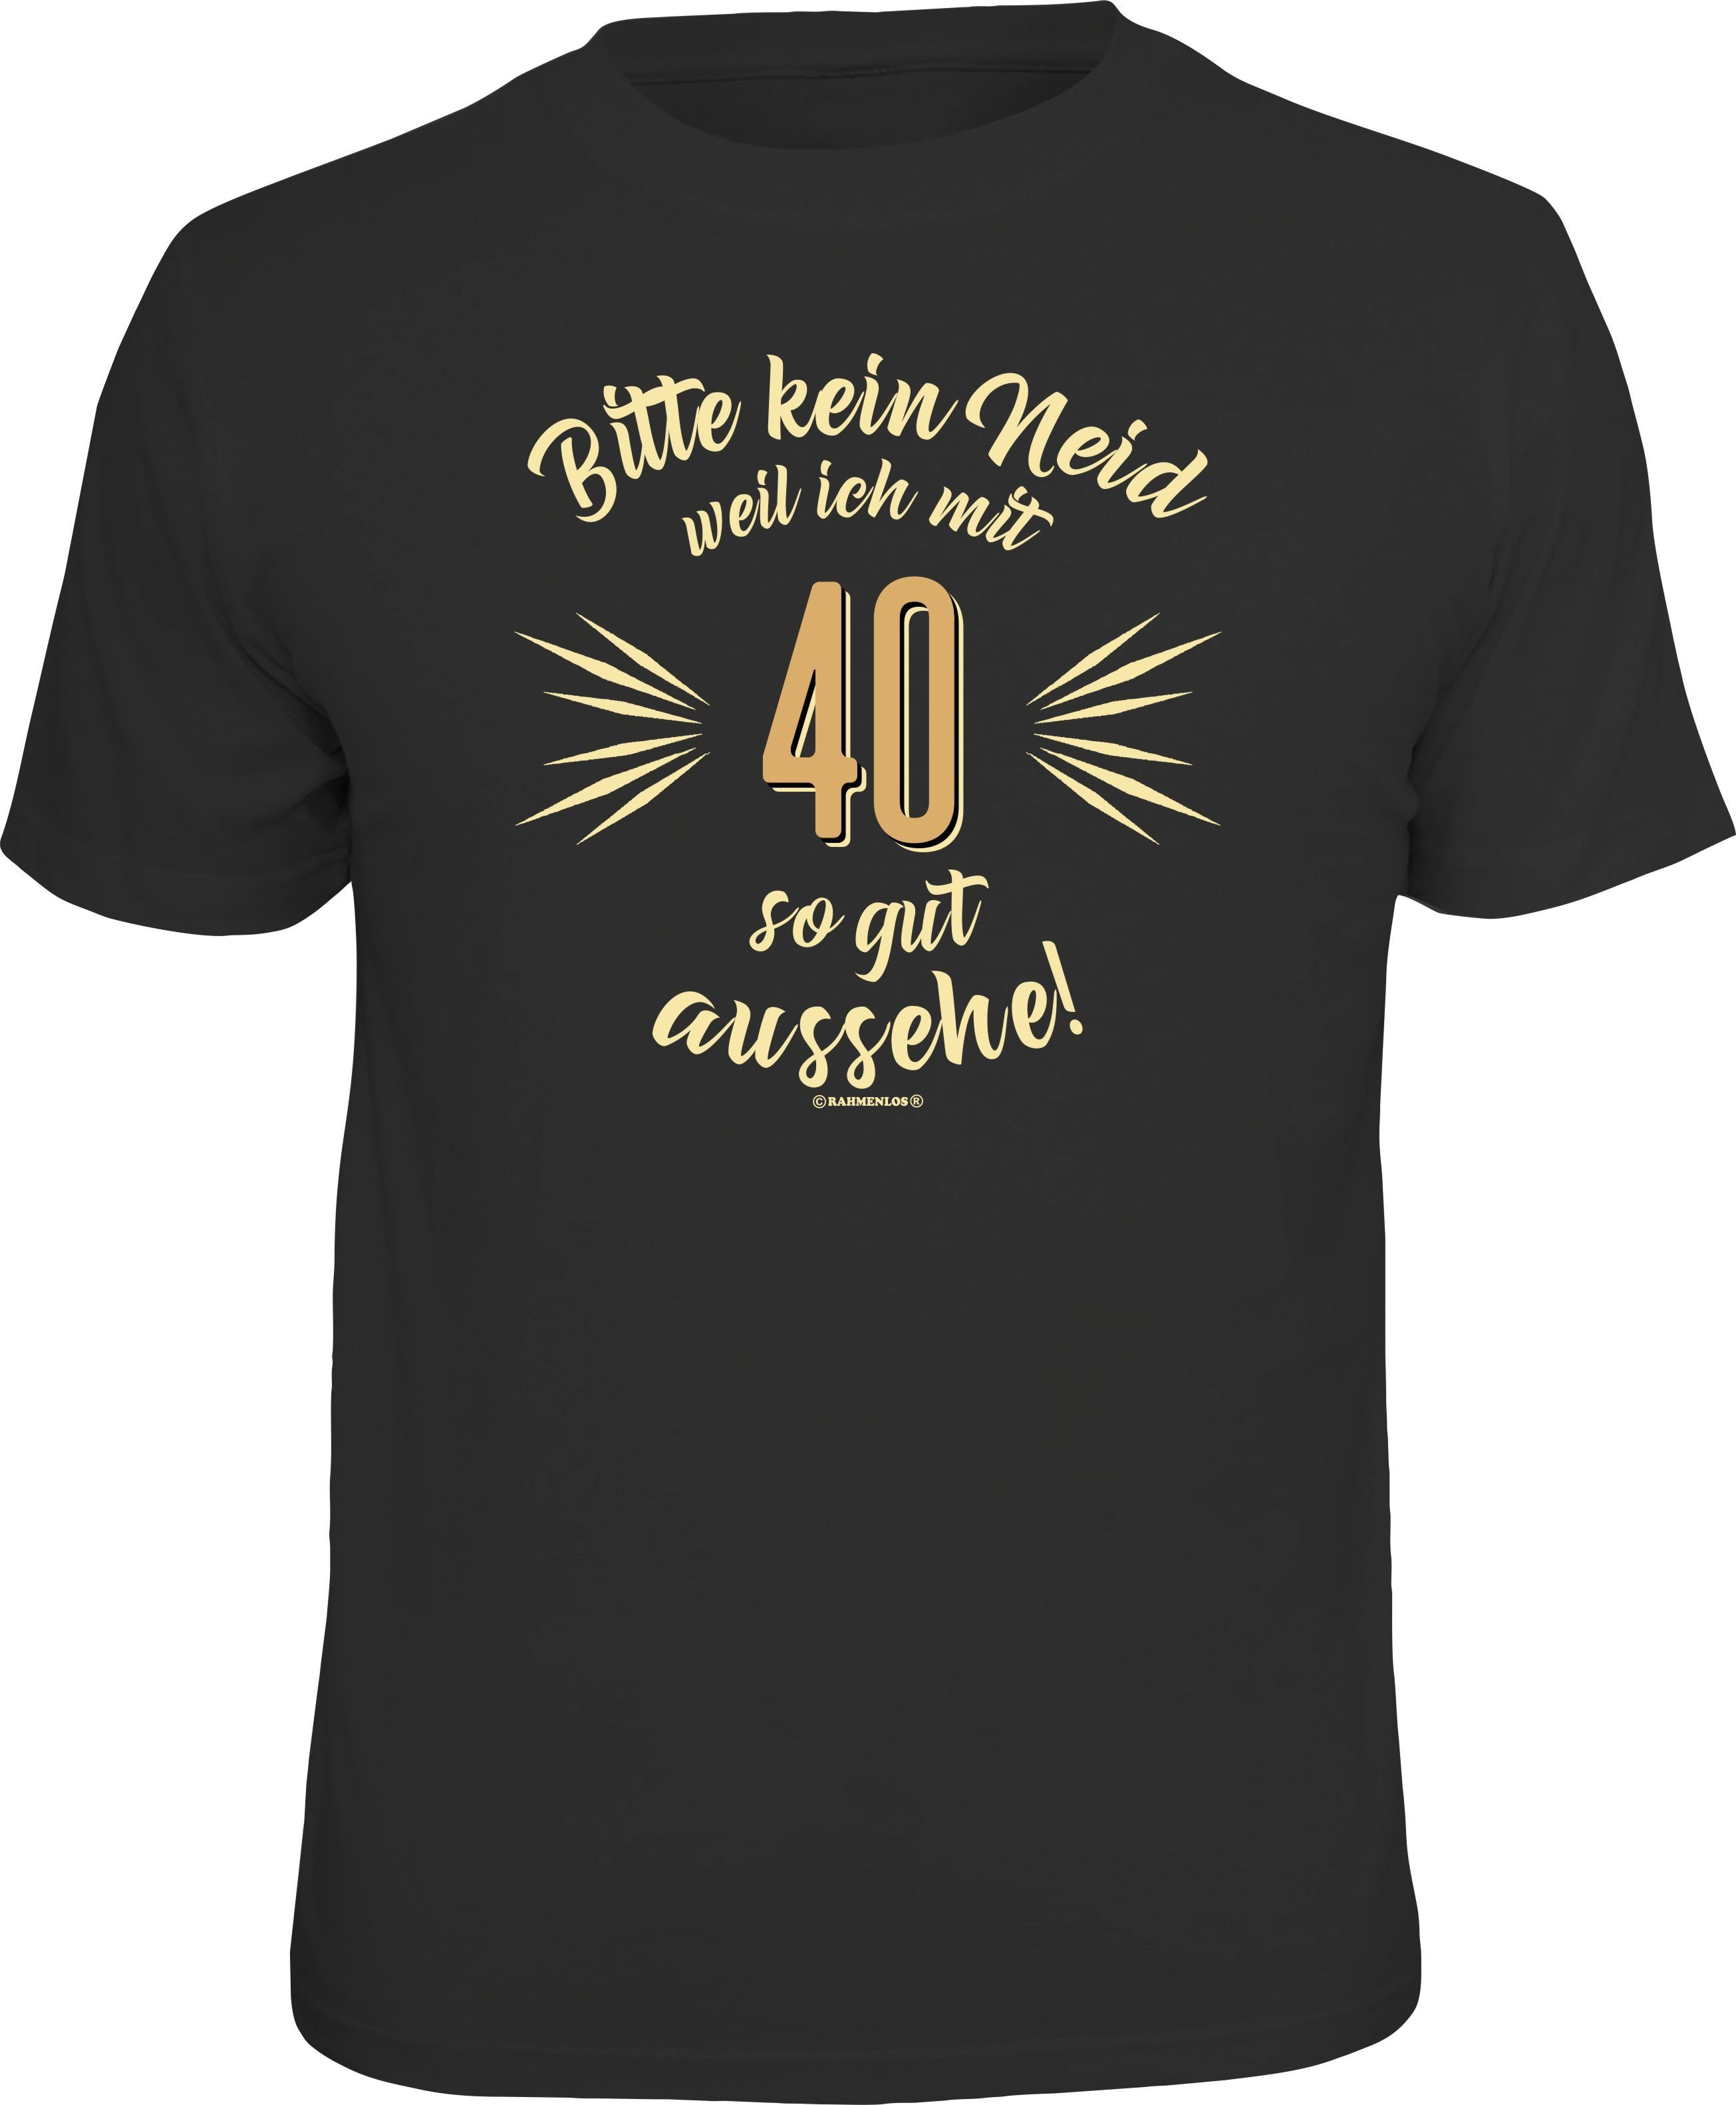 Rahmenlos T-Shirt als Geschenk zum 40. Geburtstag - Bitte kein Neid